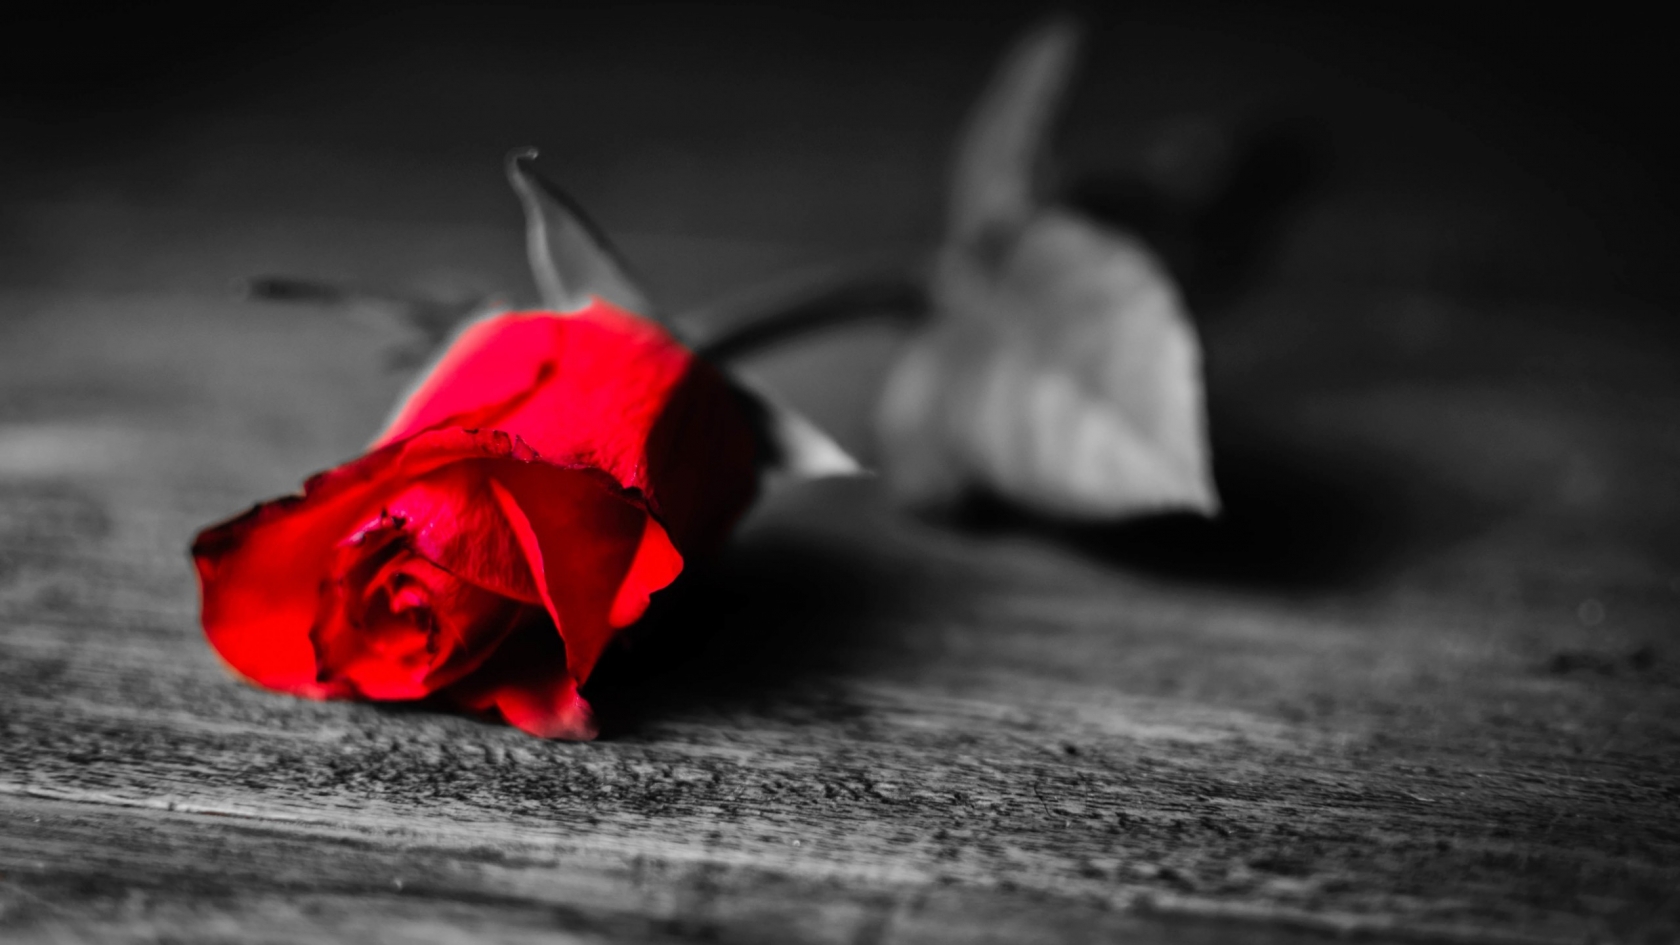 Red Rose Flower for 1680 x 945 HDTV resolution